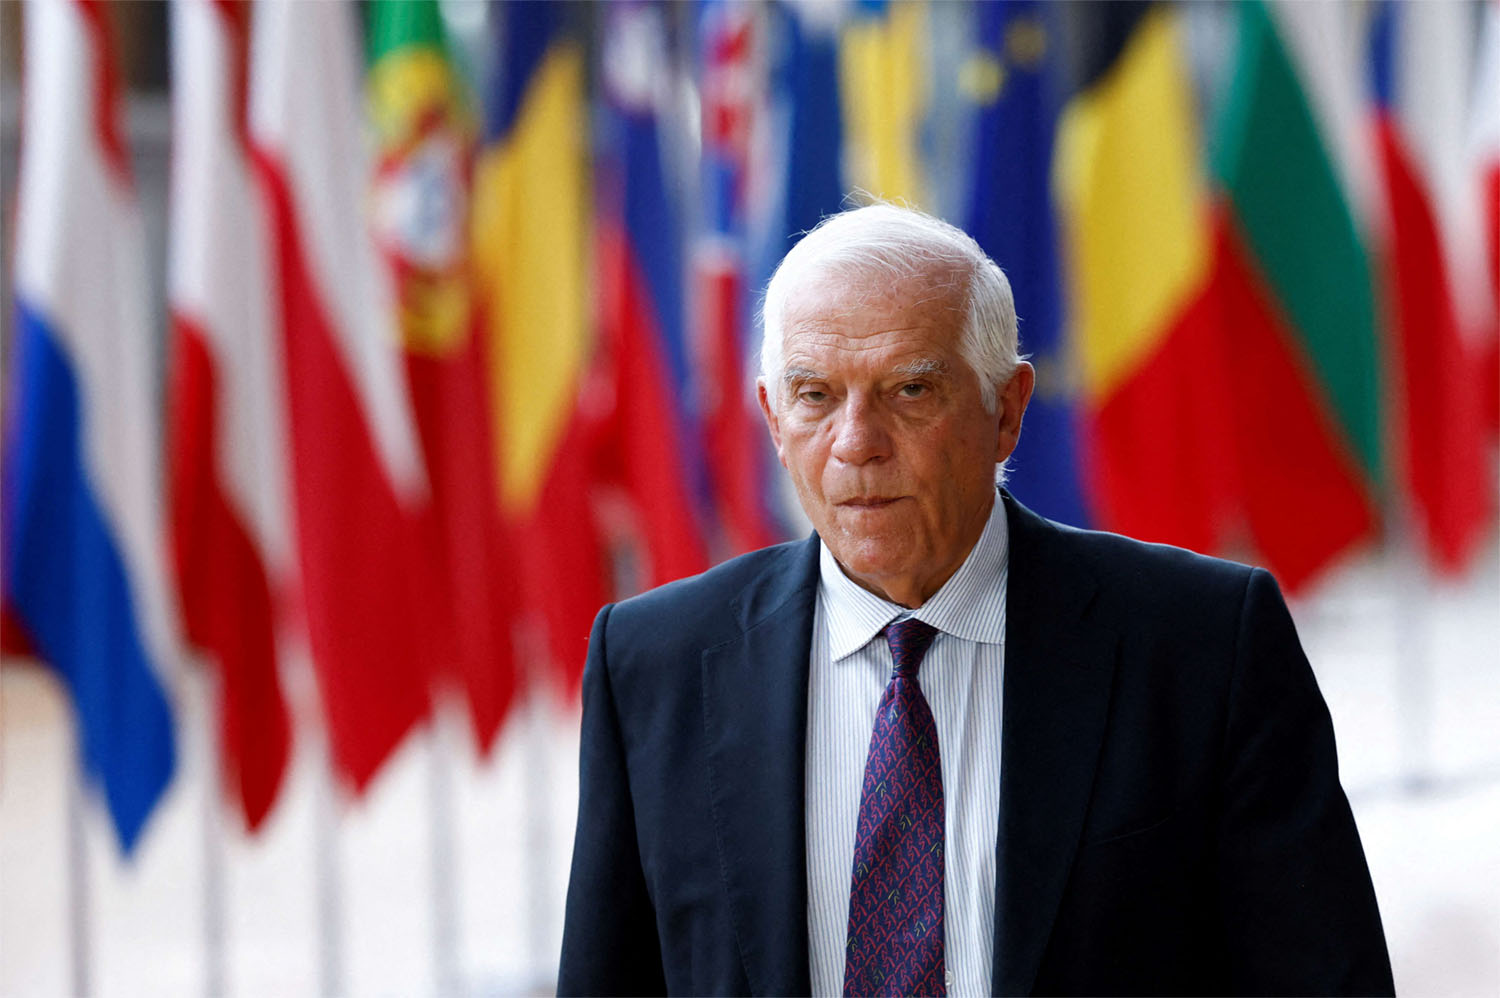 EU foreign policy chief Josep Borrell 